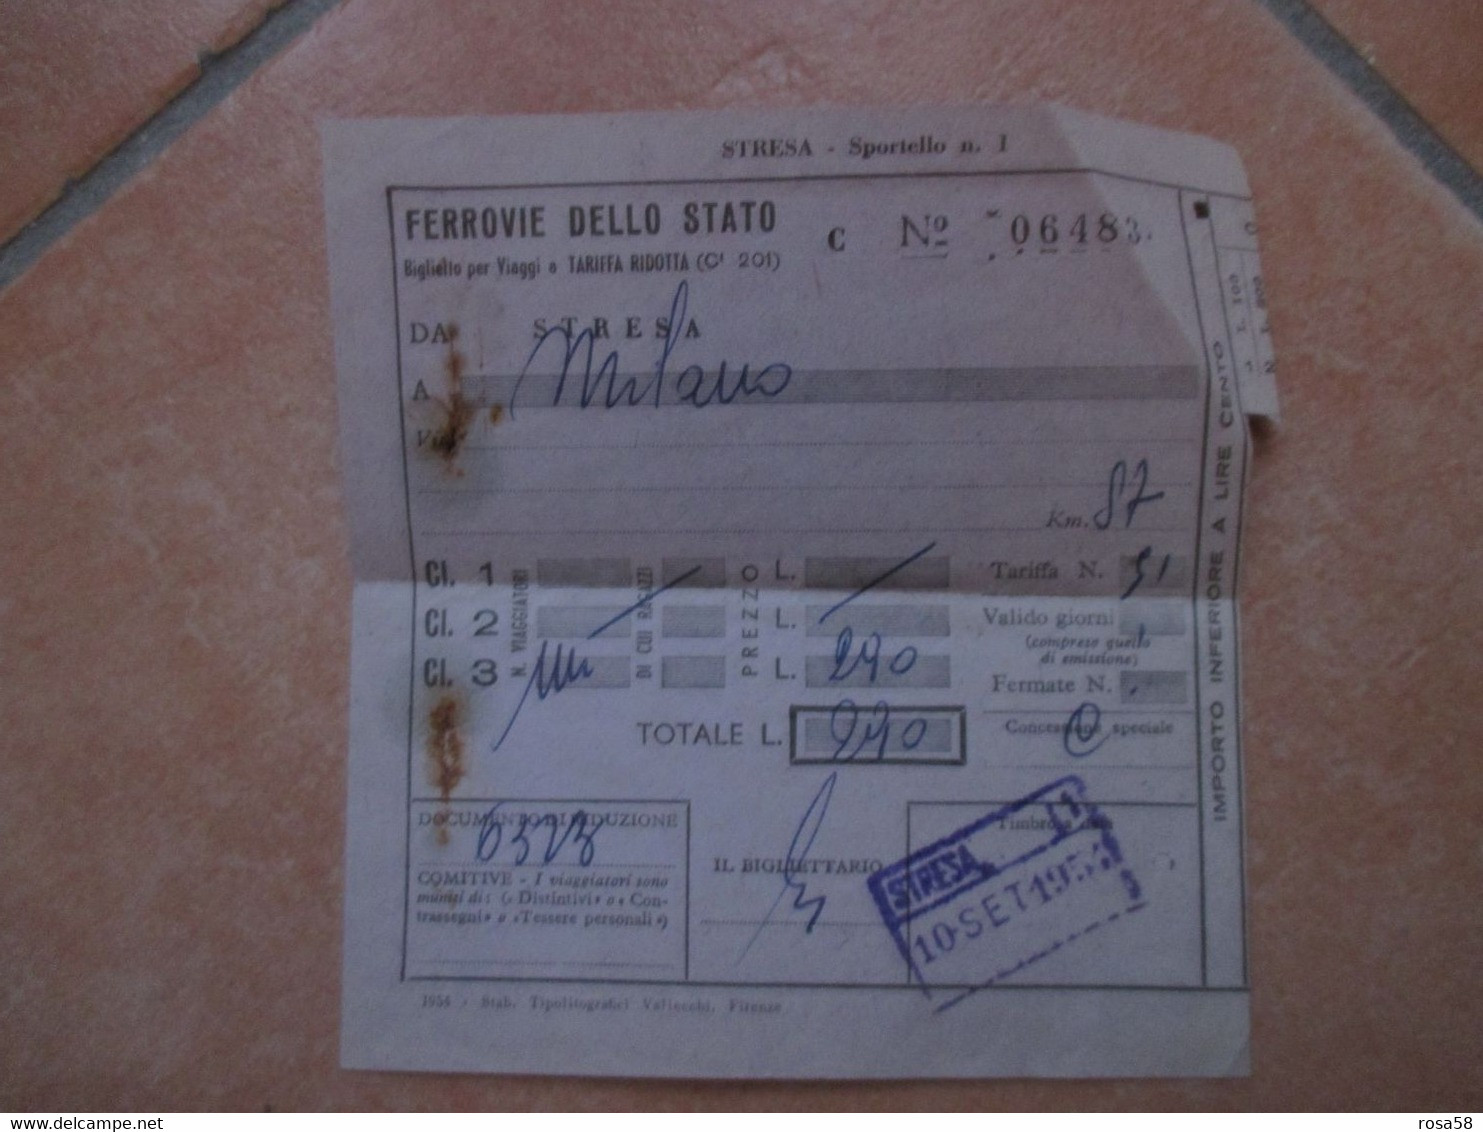 FERROVIE DELLO STATO Da STRESA A Milano 10 Sett 1954 - Europe